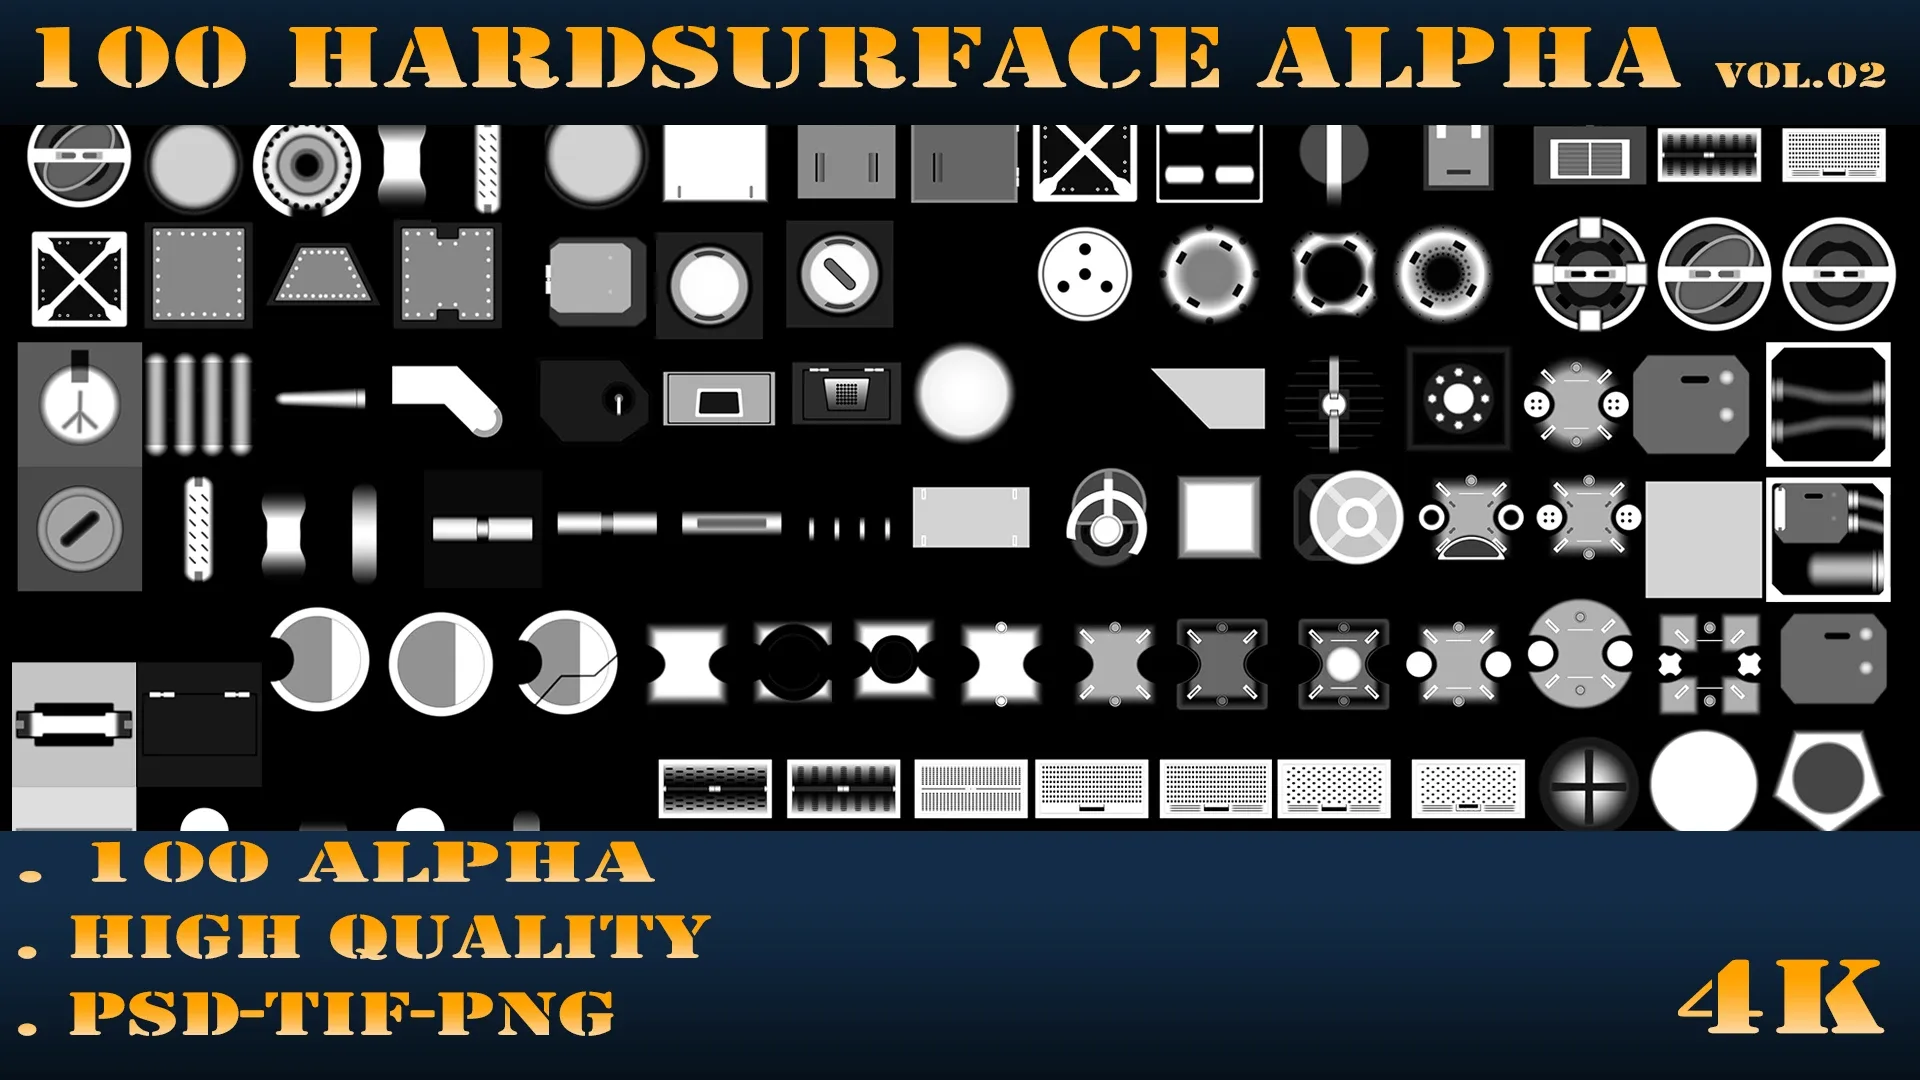 100 Hardsurface Alpha Vol.02 +PSD+TIF+PNG+4K+Model